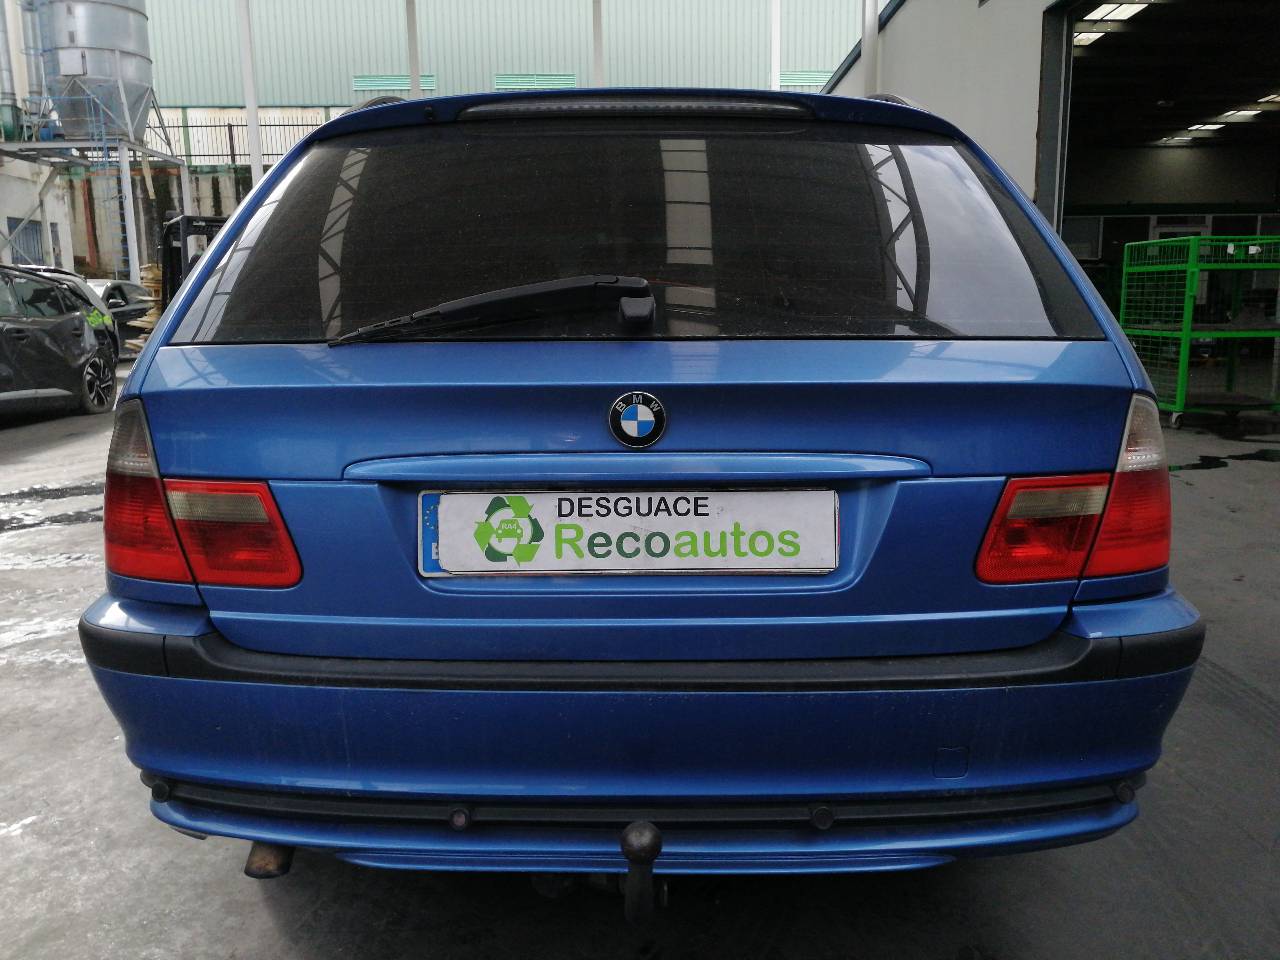 BMW 3 Series E46 (1997-2006) Ratlankis (ratas) 5161178991304, R178JJX17H2ET35, ALUMINIO10P 24222930